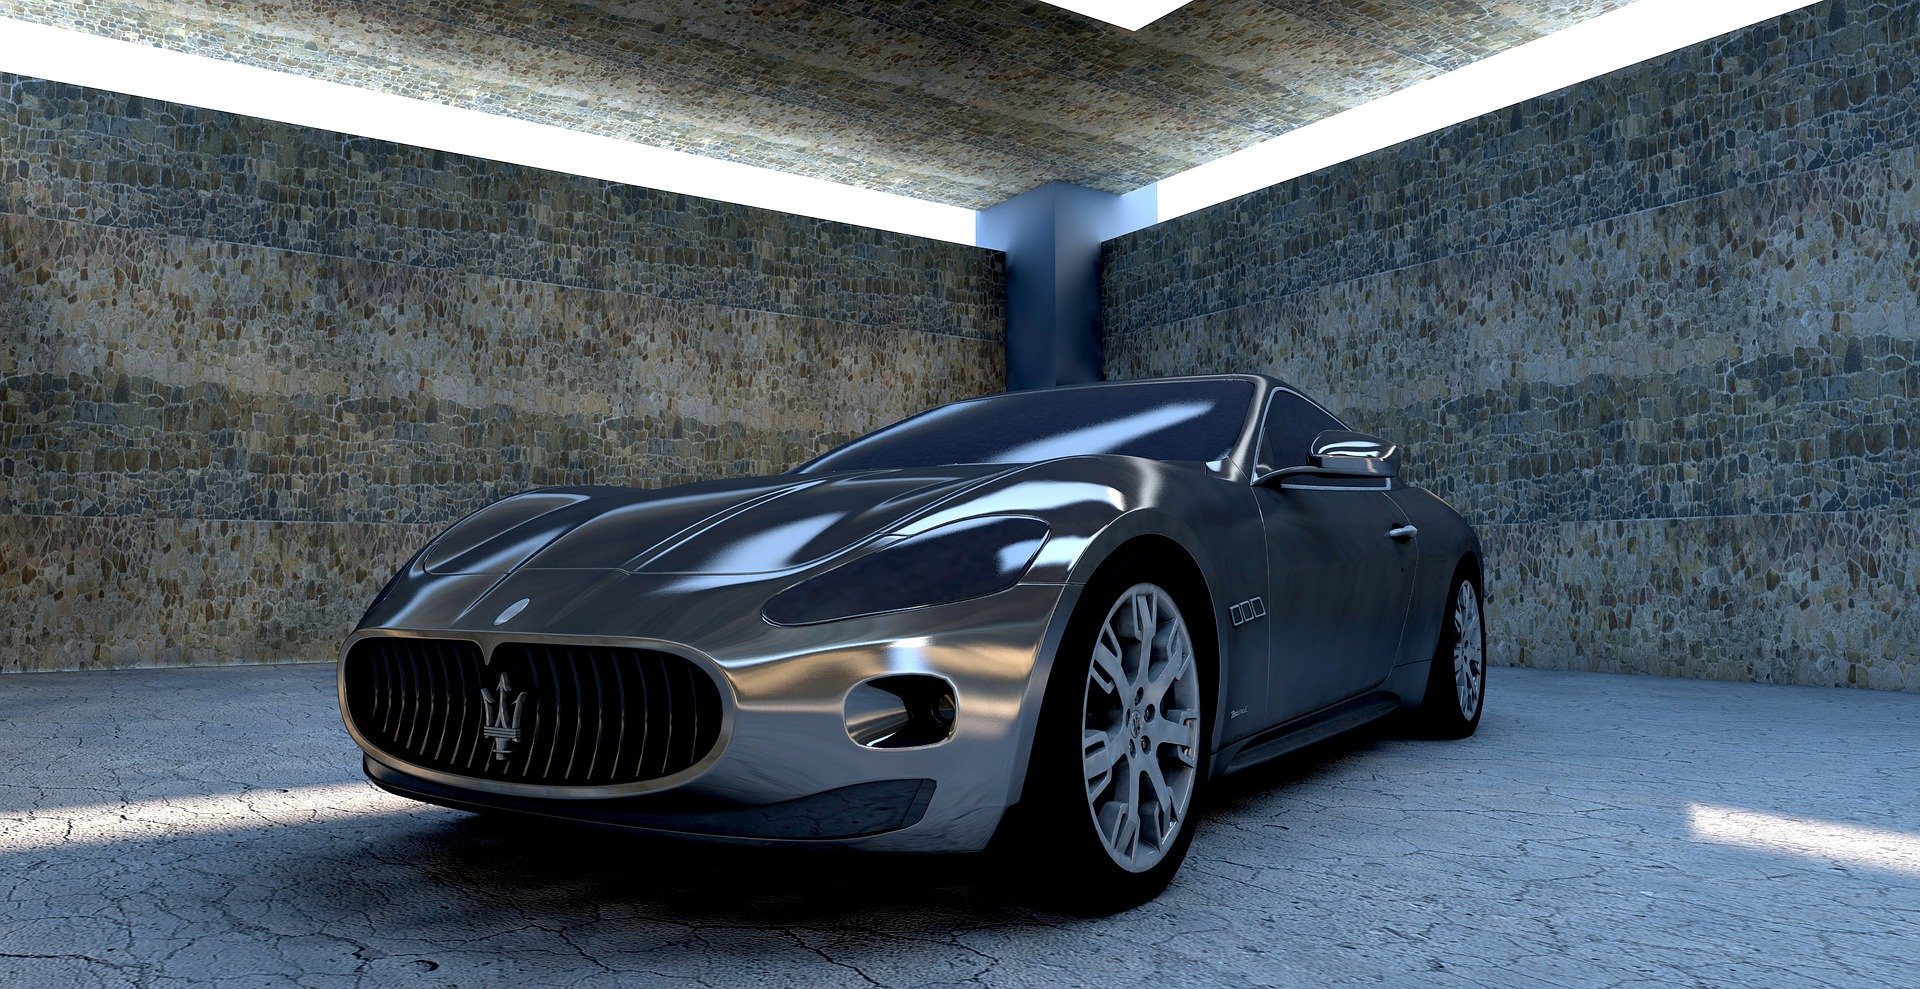 Maserati venderà davvero solo auto elettriche? La risposta è no! Però sarà disponibile una versione elettrica di ogni modello a partire dal 2025